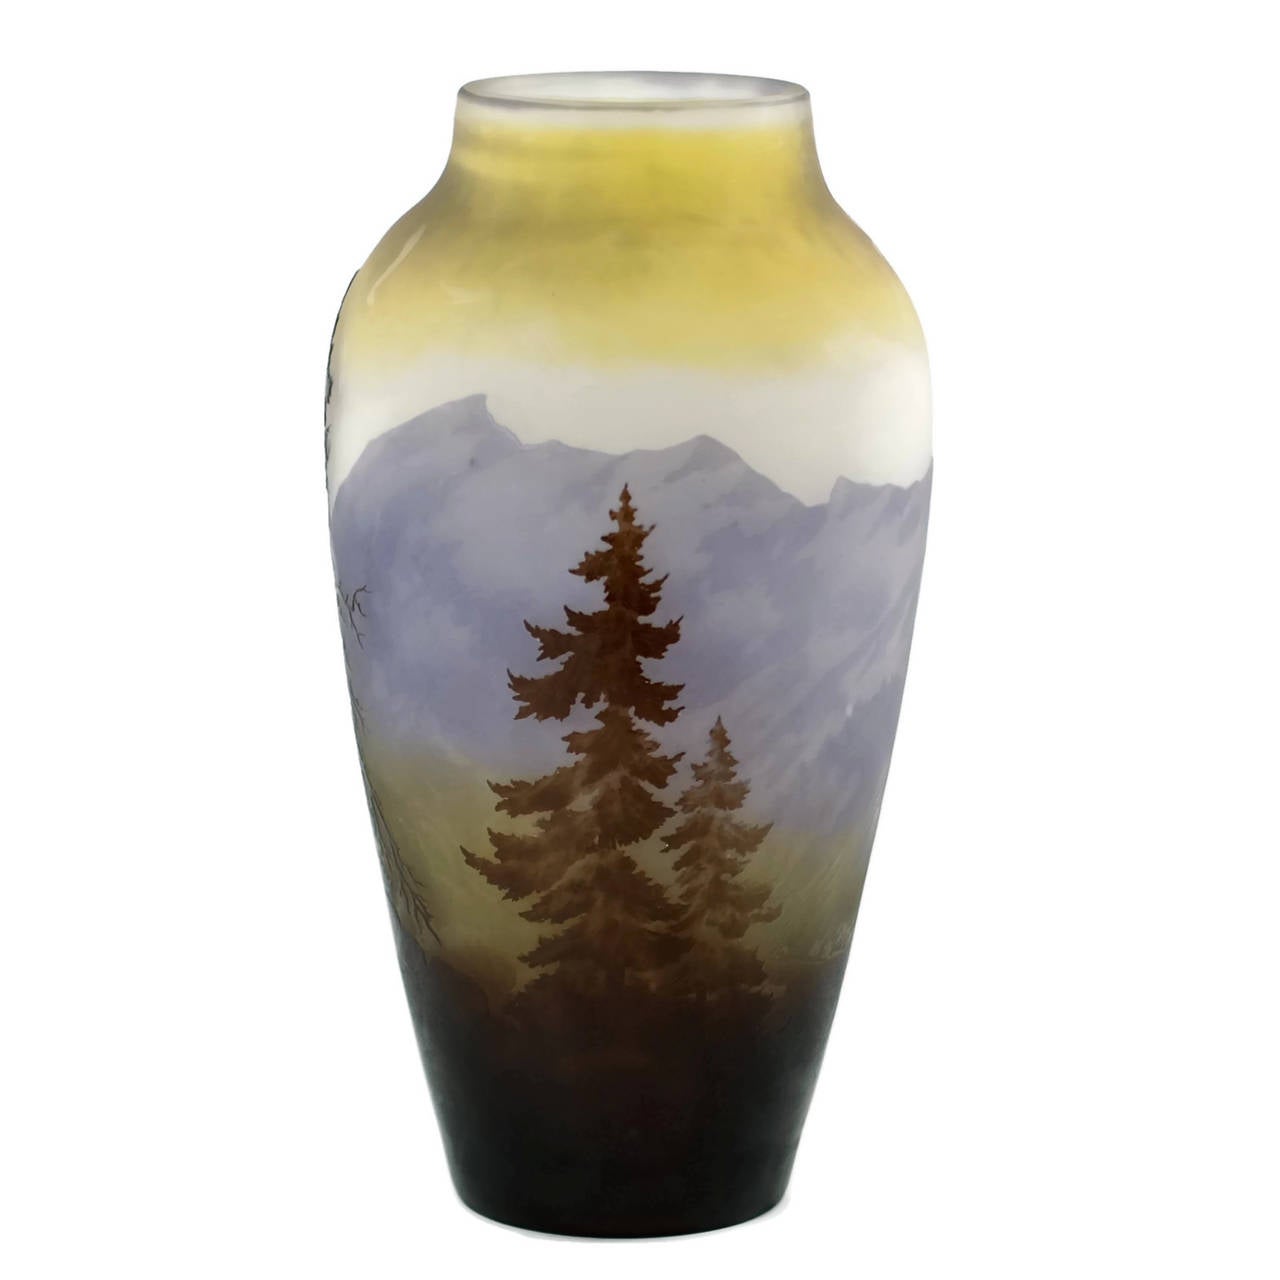 Diese Vase aus Jugendstil-Kamee-Glas stammt aus dem Atelier des französischen Botanikers und Künstlers Emile Gallé (1846-1904). Gallé ist vor allem für seine Kameengläser bekannt:: die er mit Hilfe von Radschnitt- und Ätztechniken herstellt. Diese